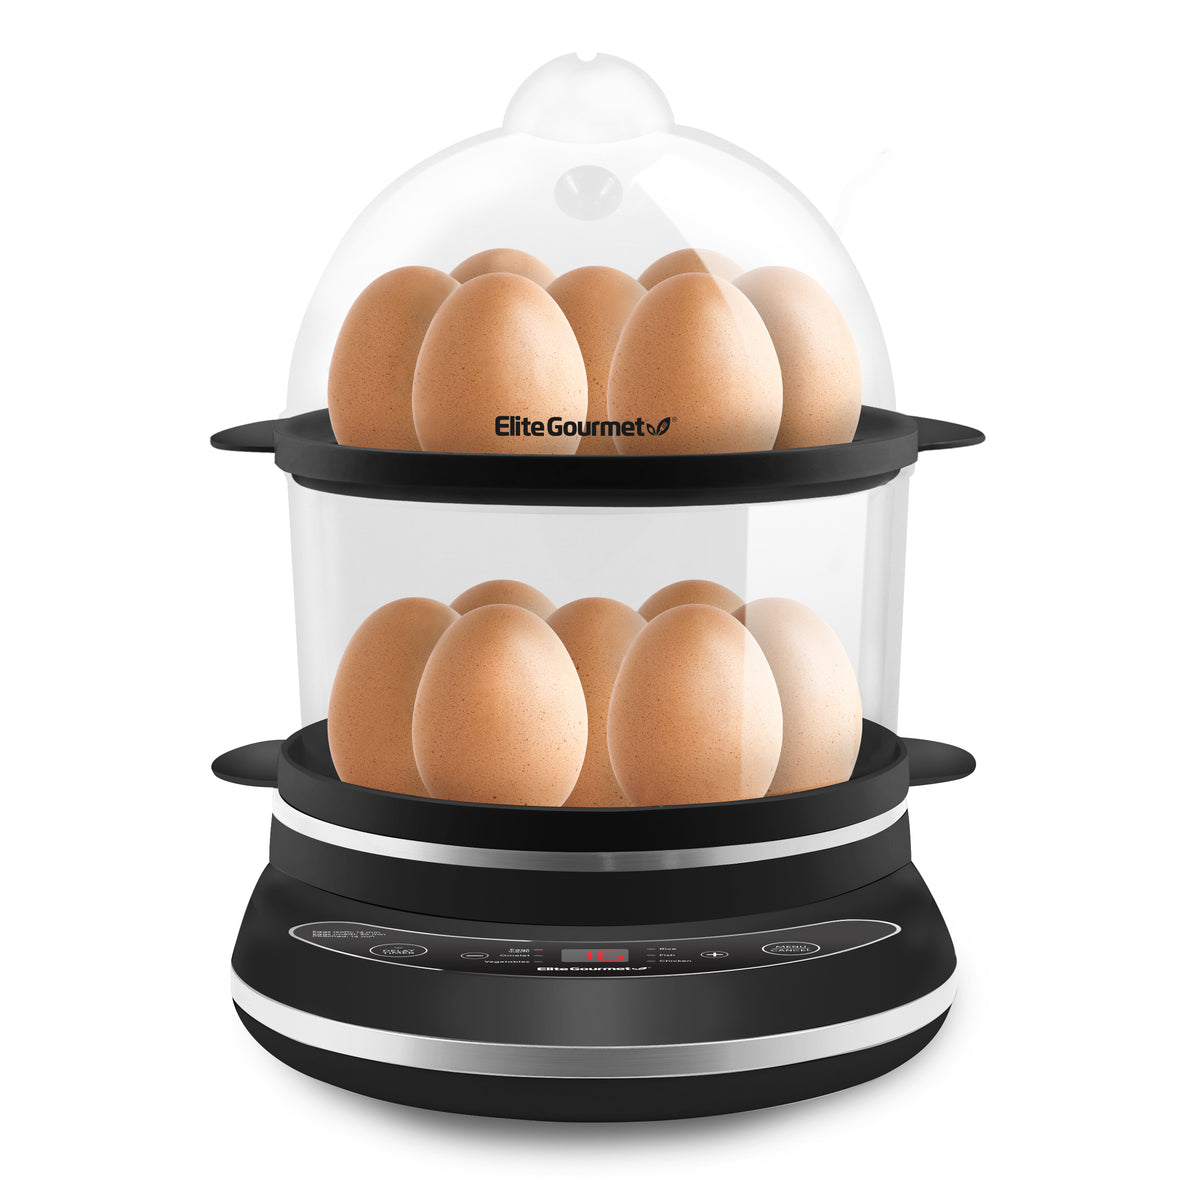 Elite Gourmet Eom123 2-Egg Small Electric Egg Cooker - Black EOM123 - The  Home Depot